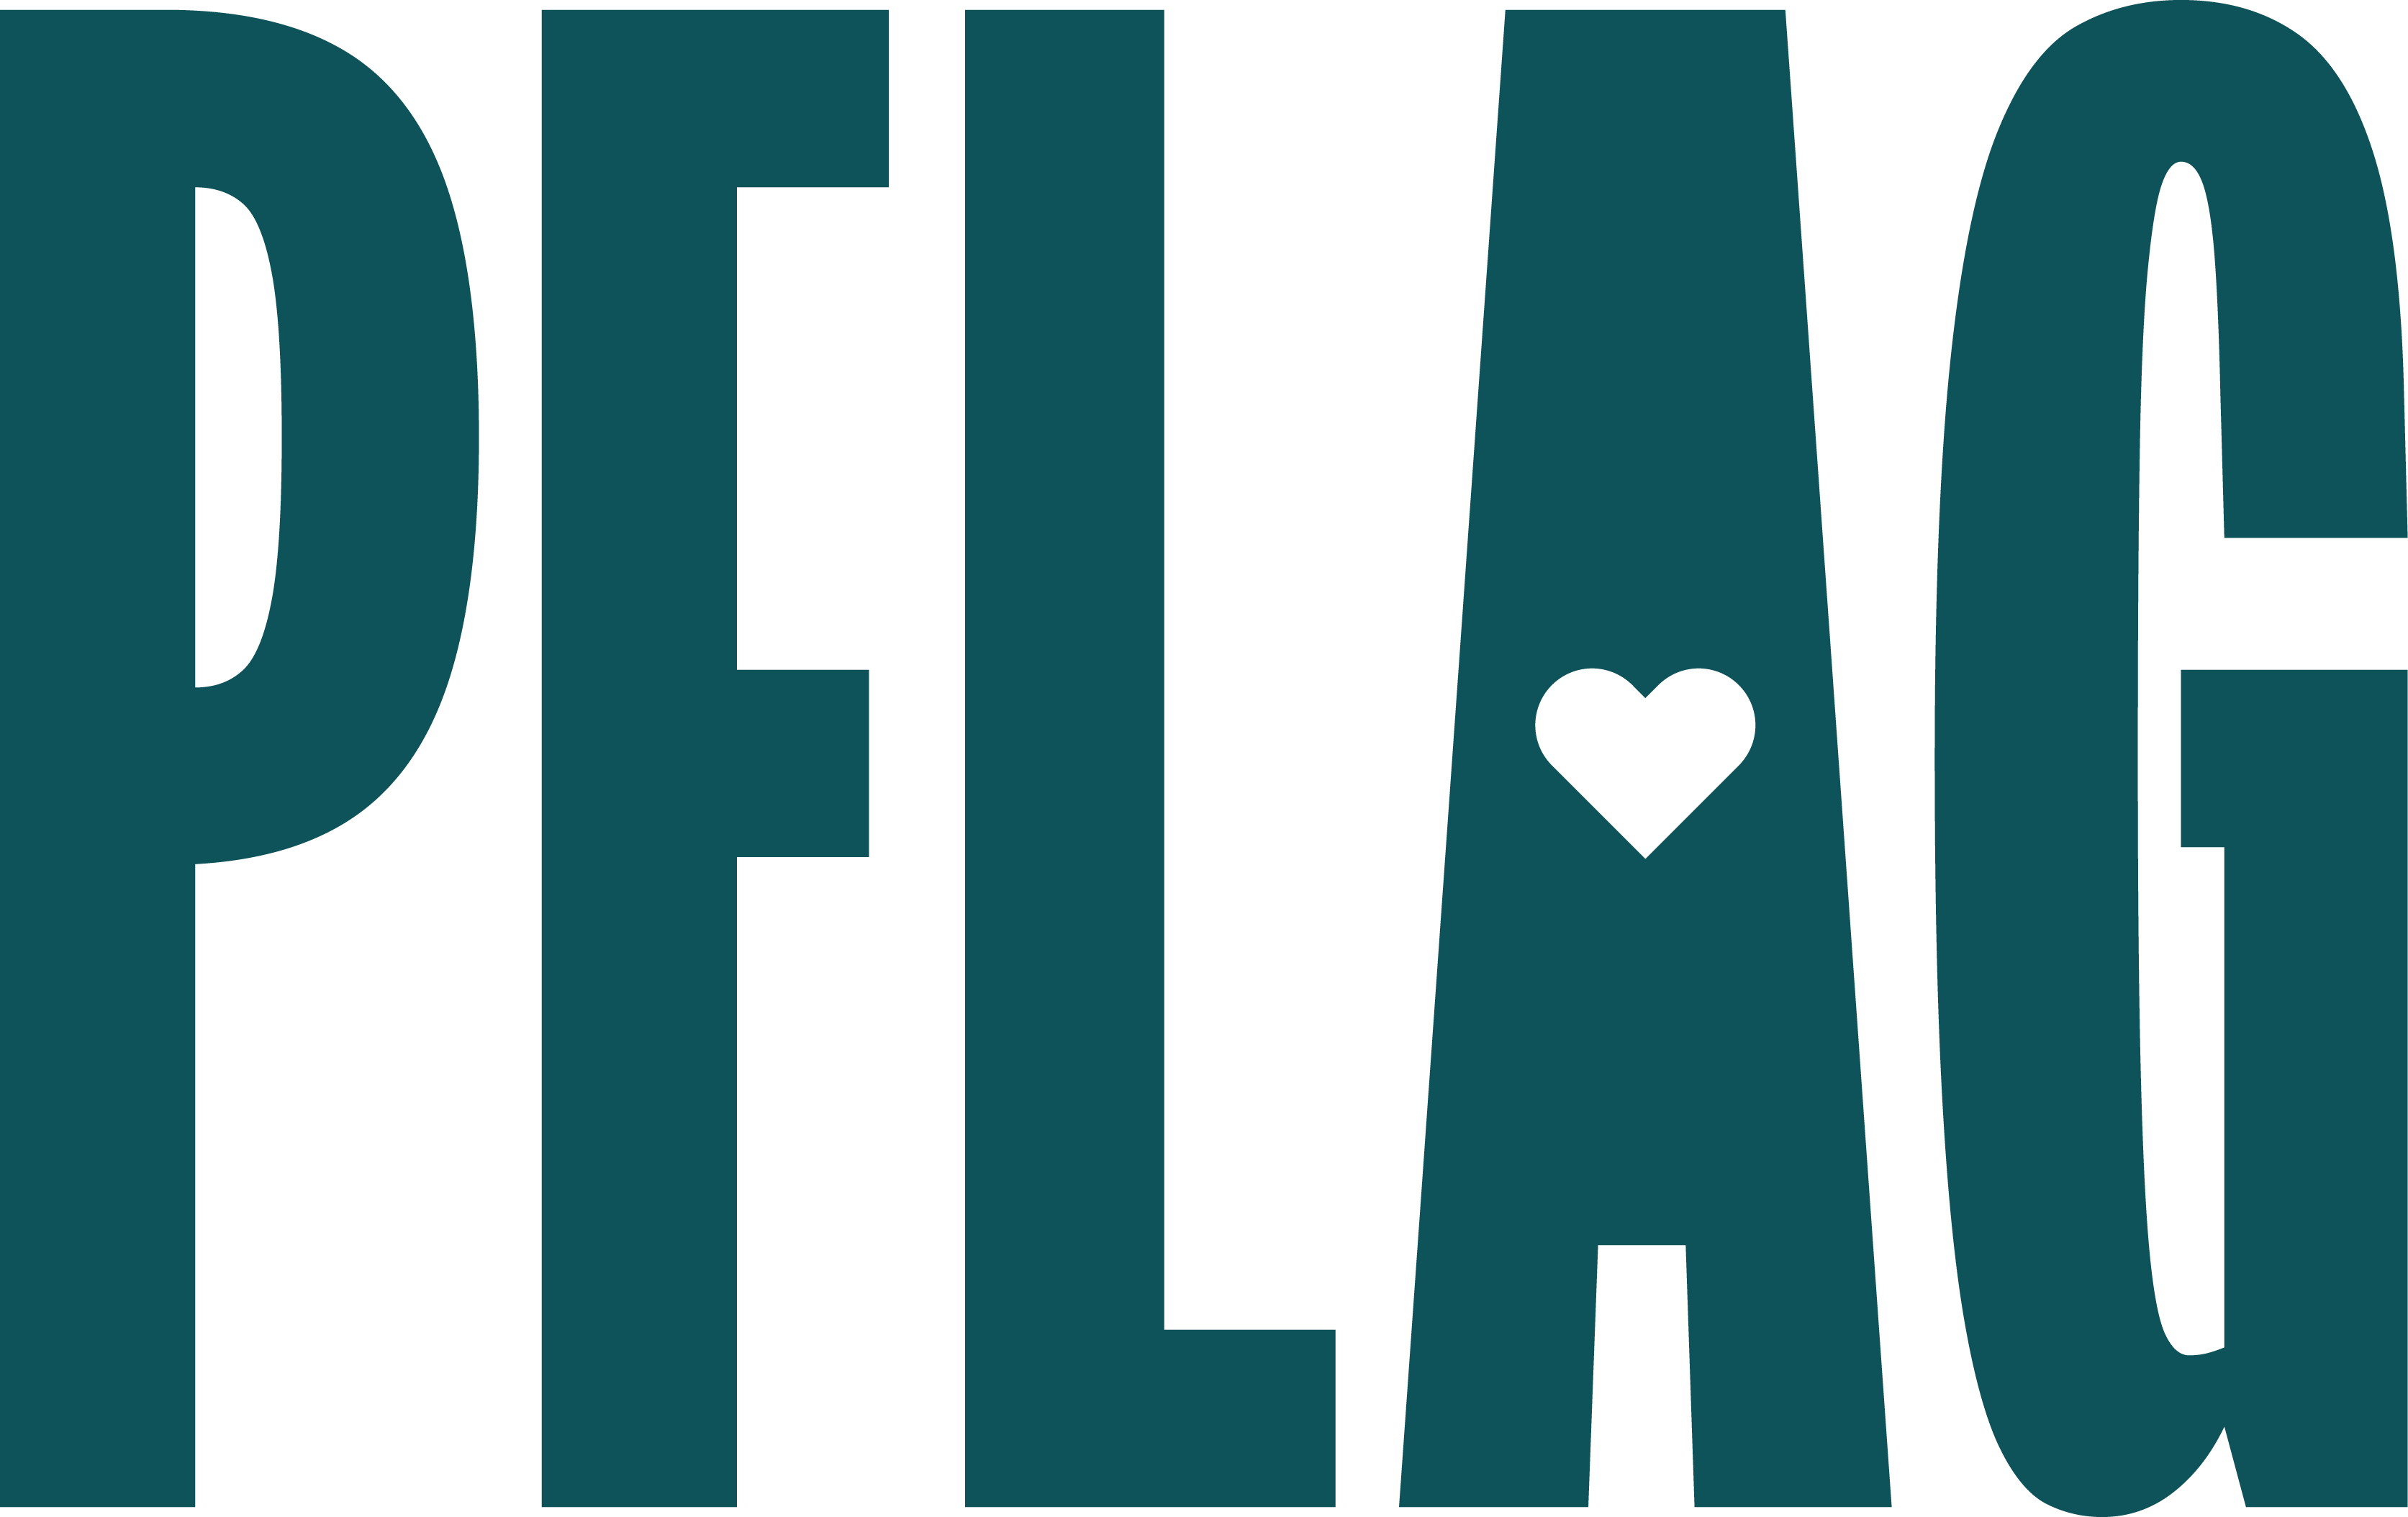 PFLAG logo